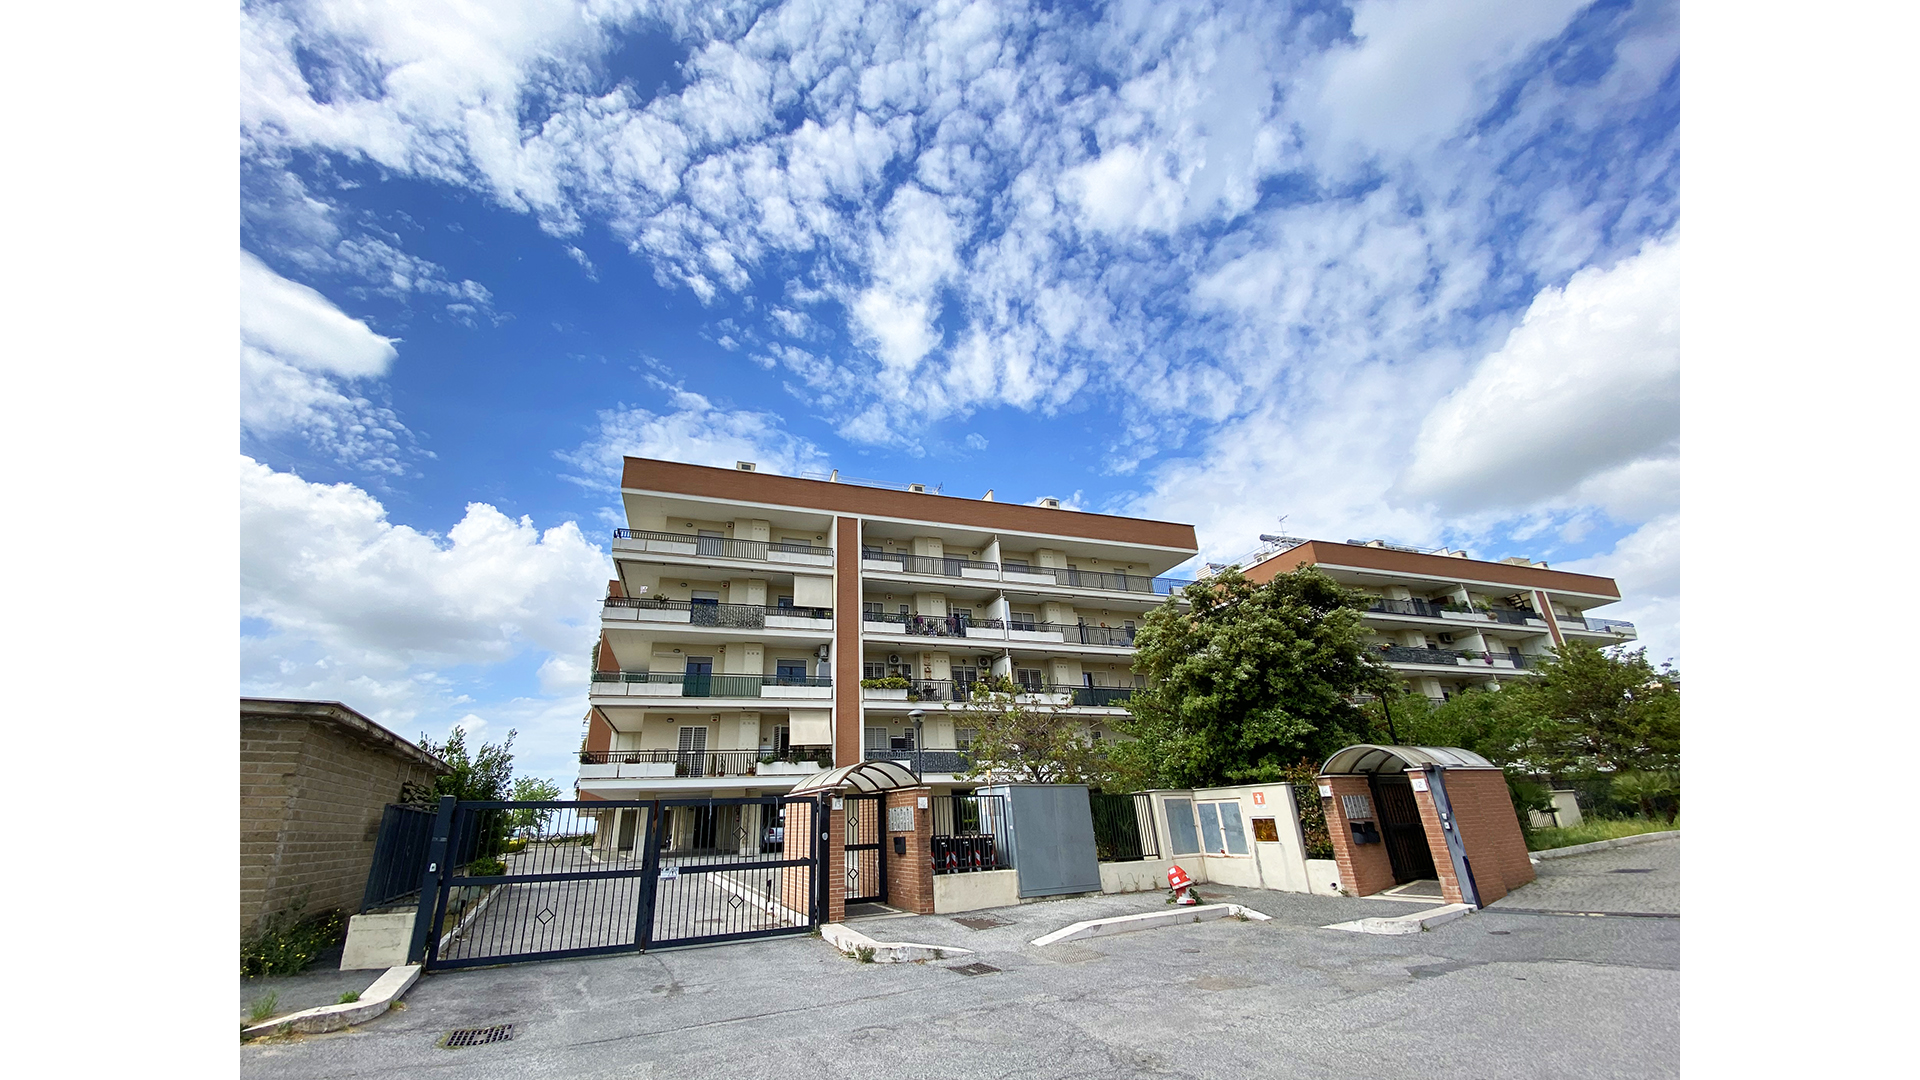 esterni stabile con appartamenti in vendita Roma Est